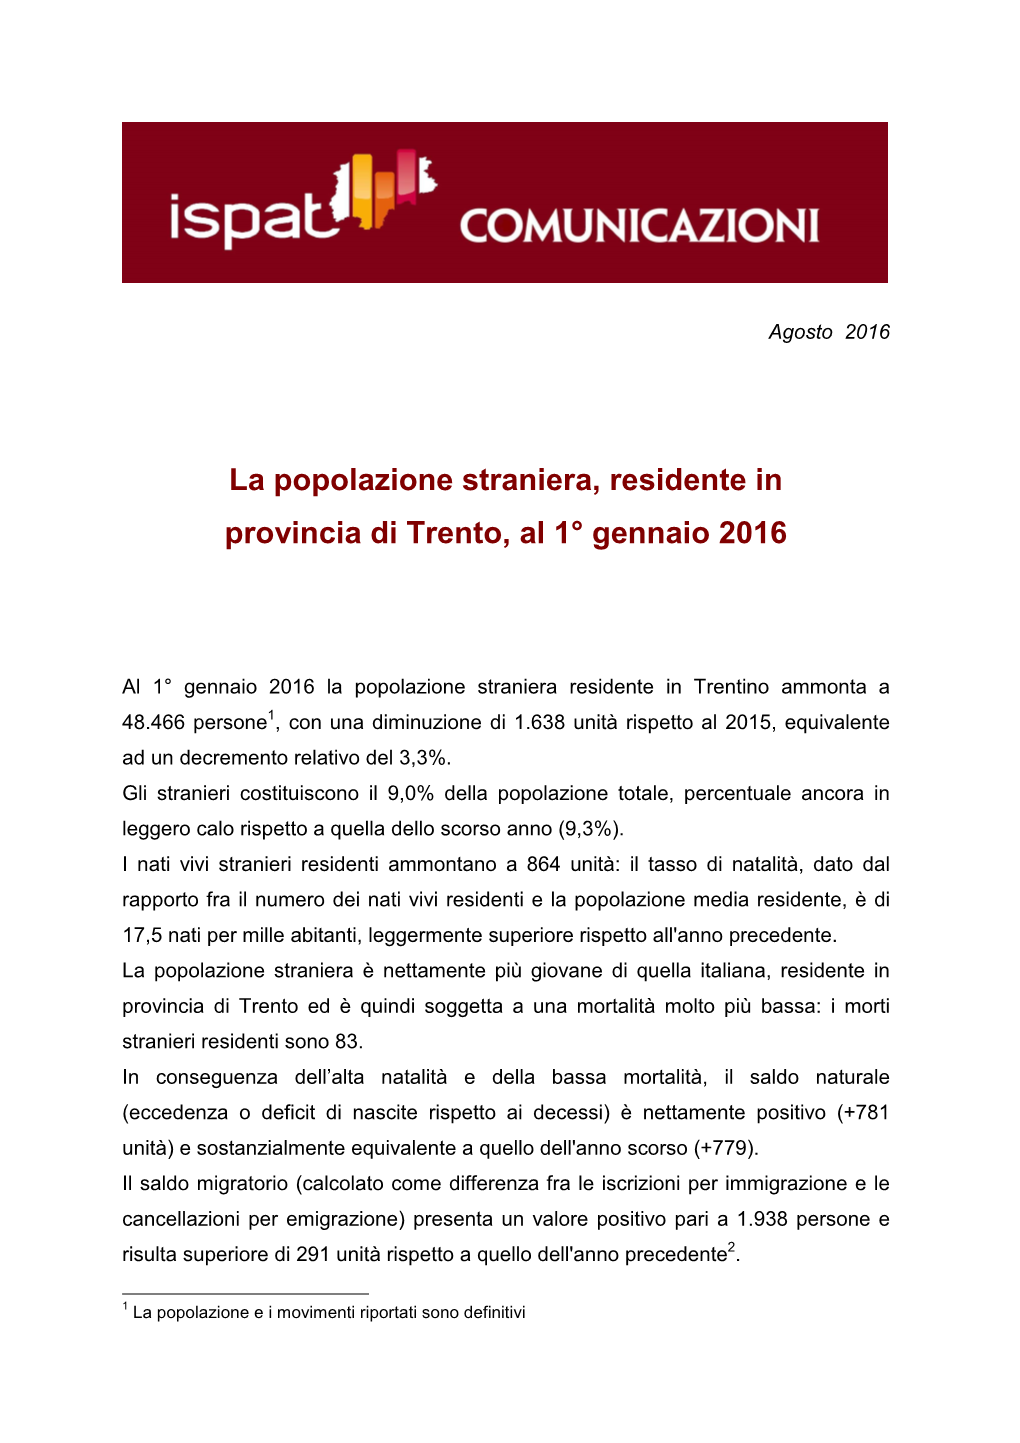 La Popolazione Straniera, Residente in Provincia Di Trento, Al 1° Gennaio 2016